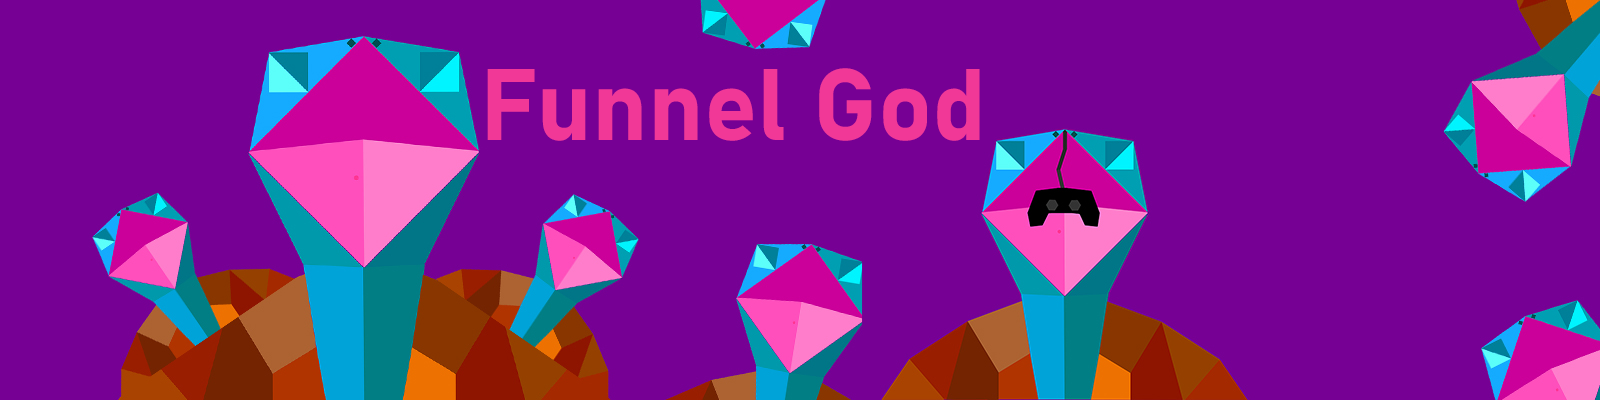 Funnel God